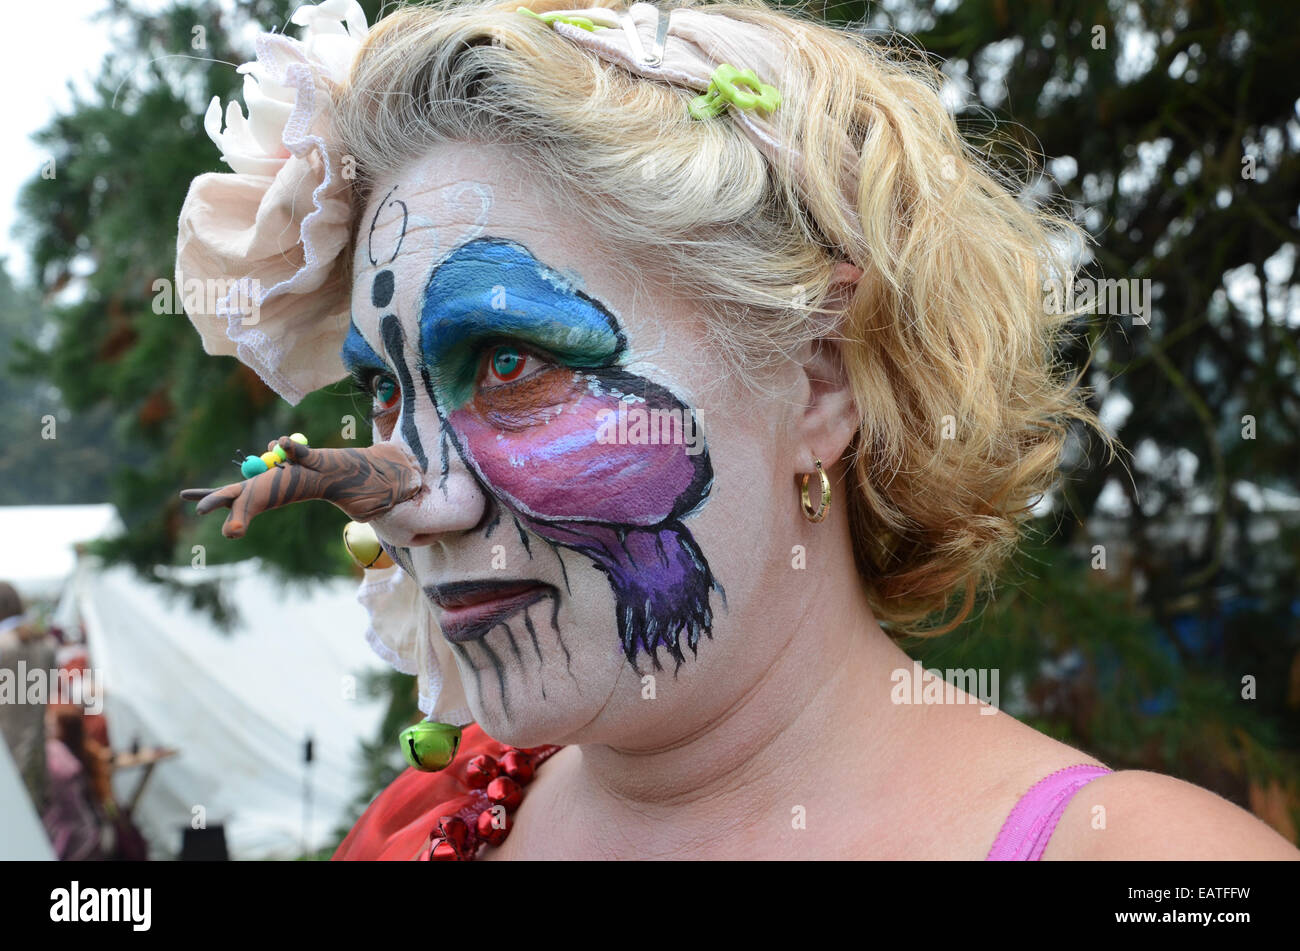 Femme de couleur à 2014 Fantasy Fair Arcen Pays-Bas Banque D'Images